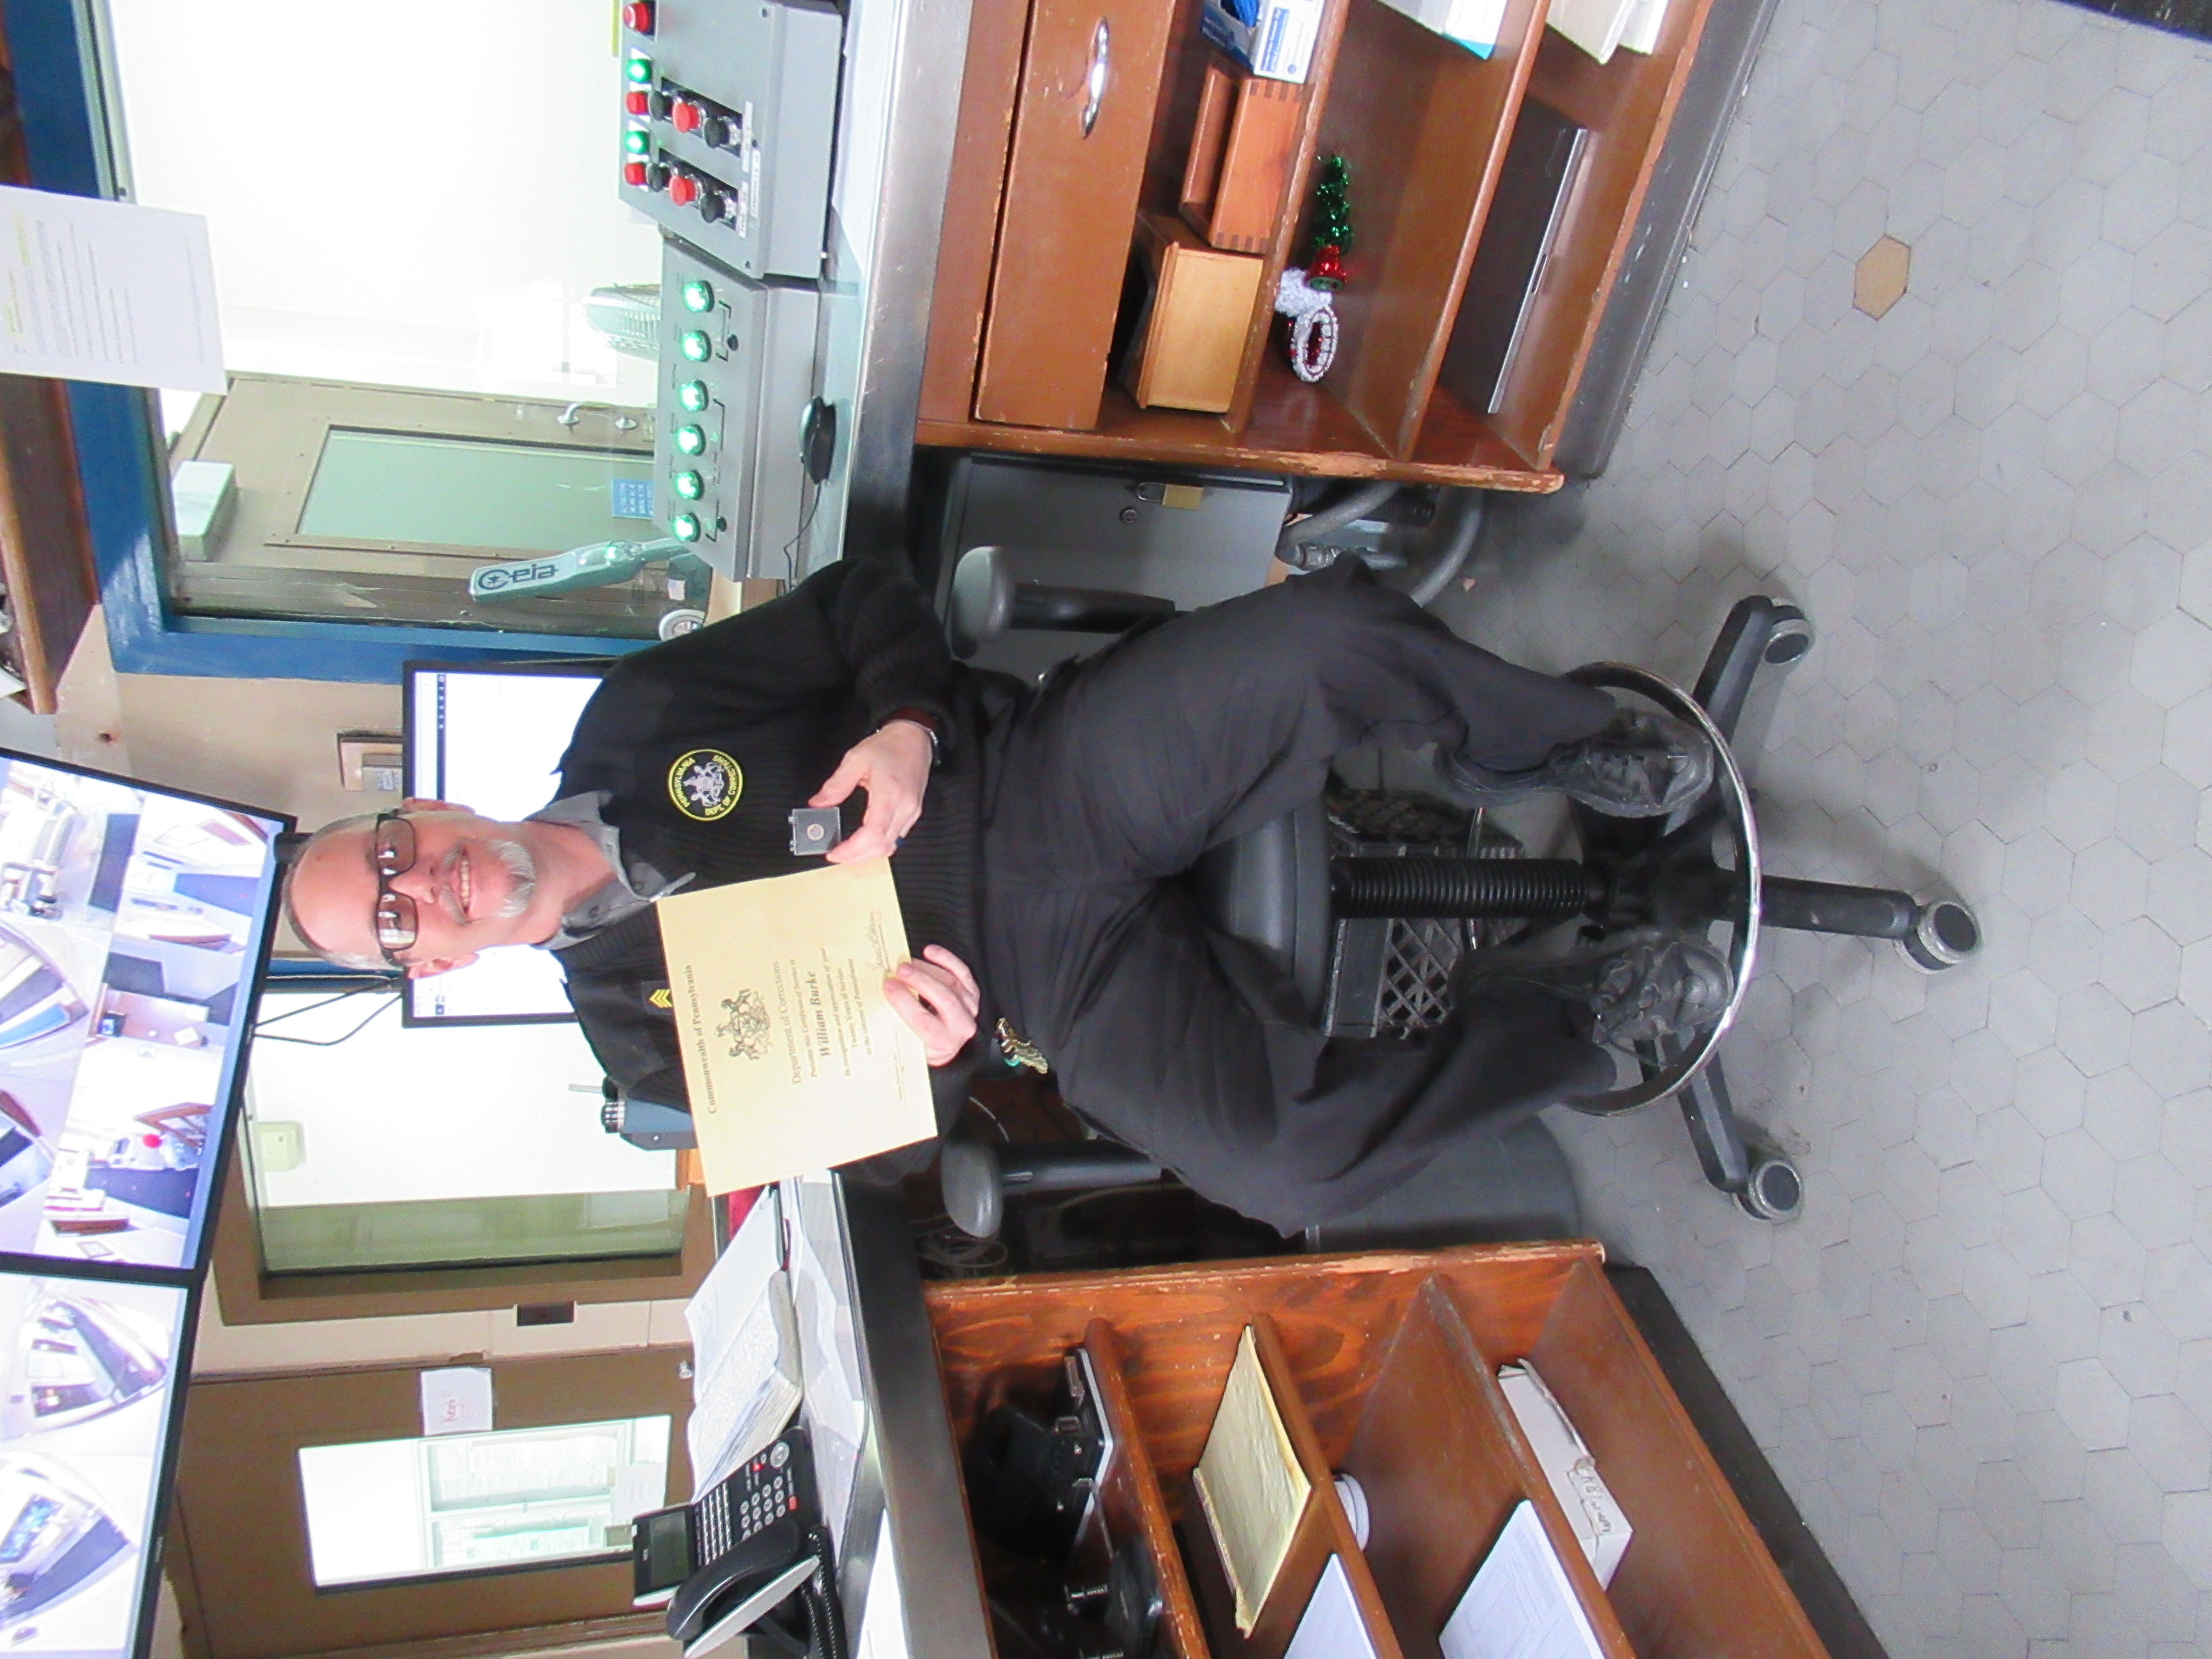 Sgt. William Burke holding a certificate.